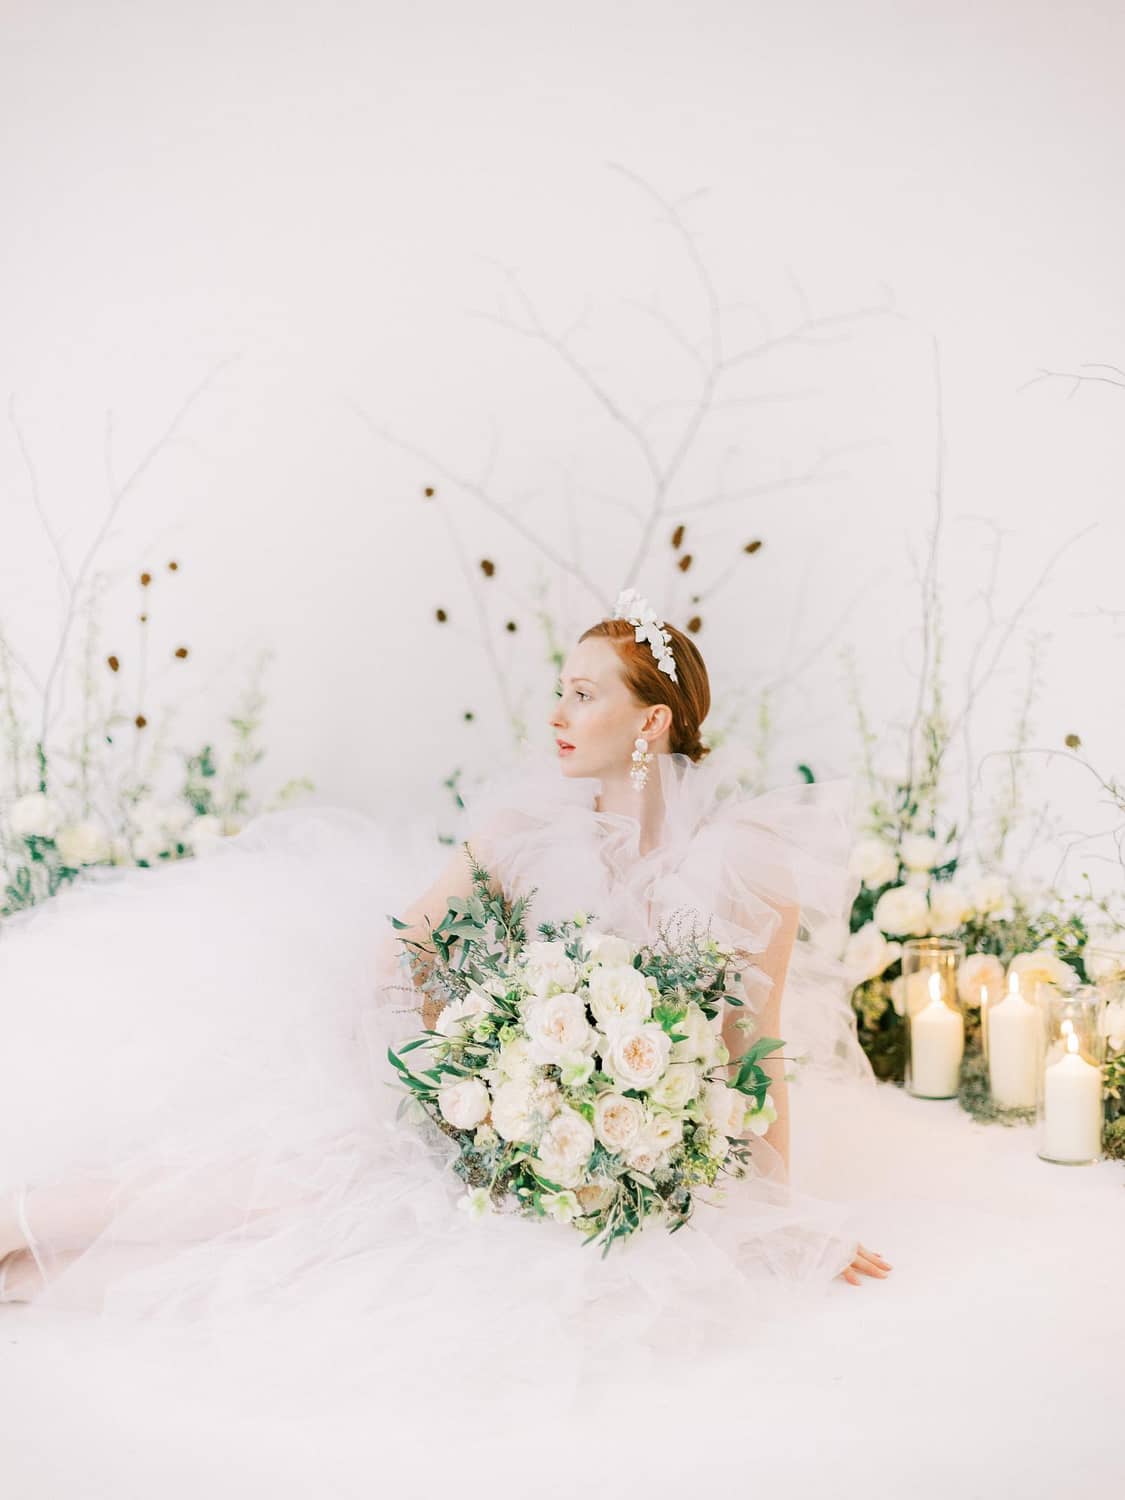 Braut im weißen Rüschenhochzeitskleid mit Brautstrauß